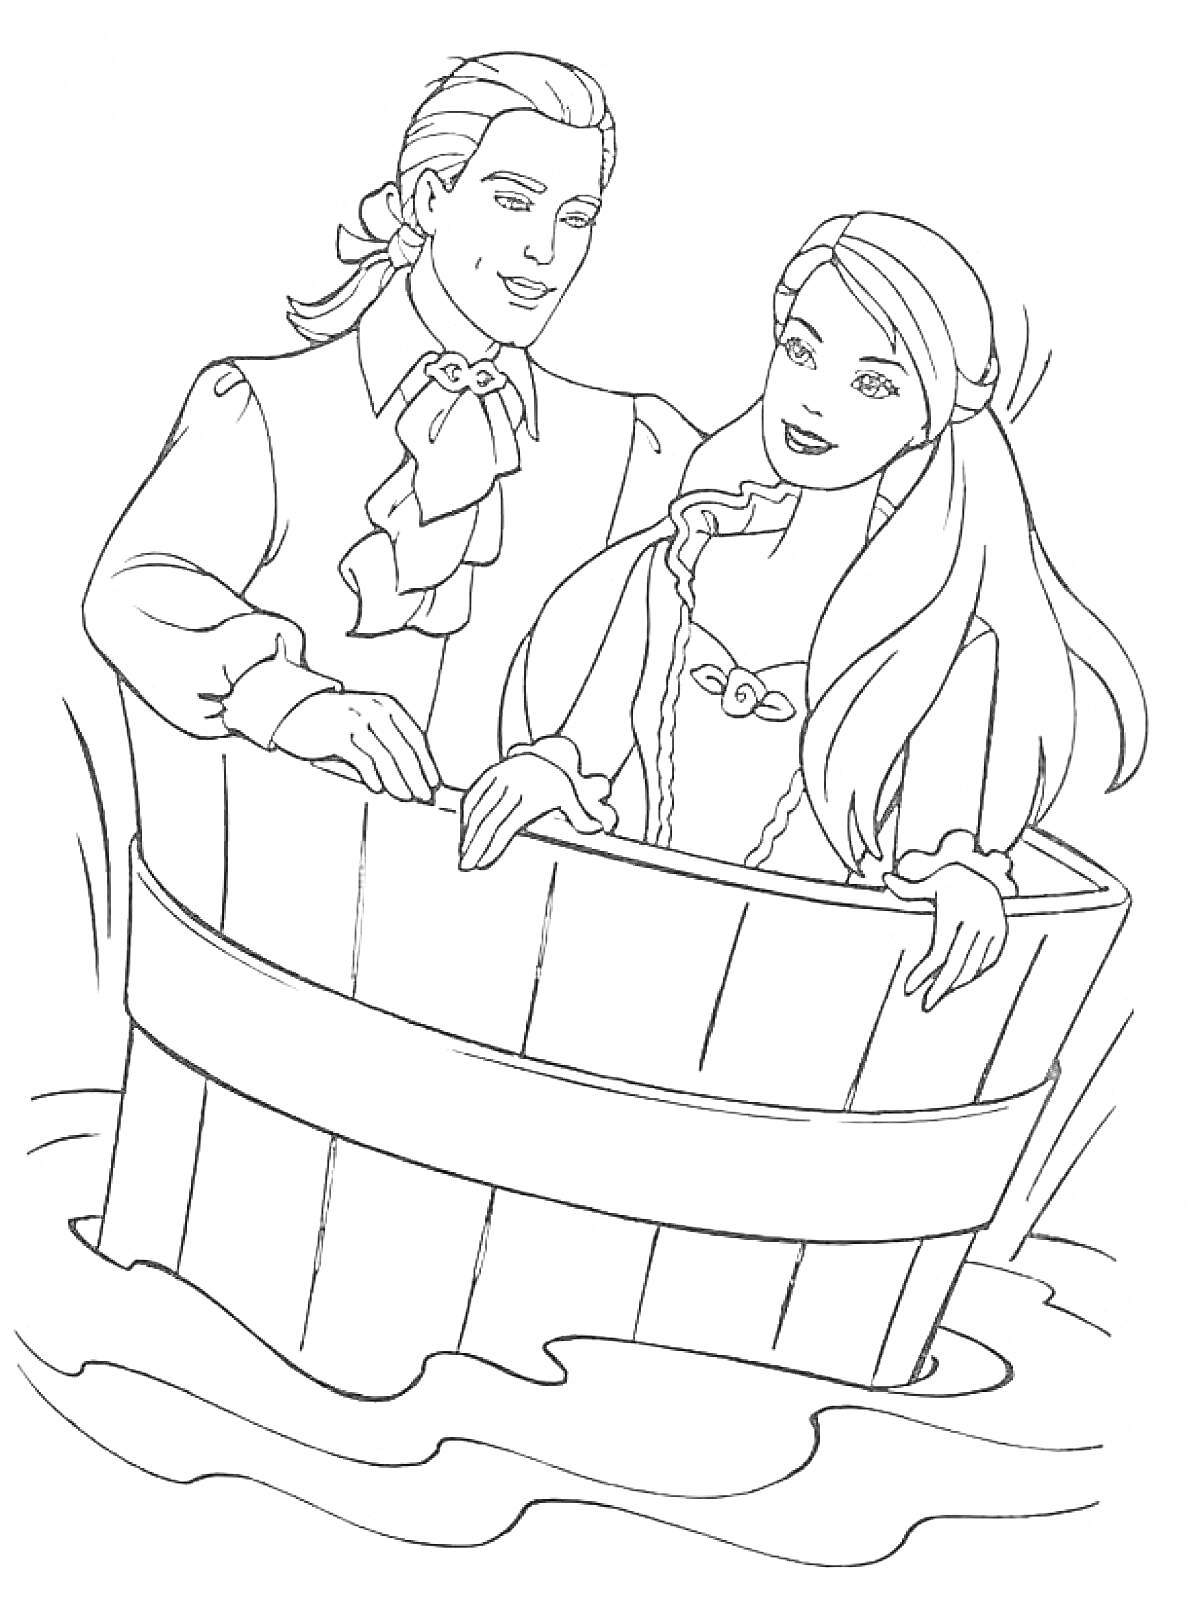 Барби и Кен в деревянной бочке на воде